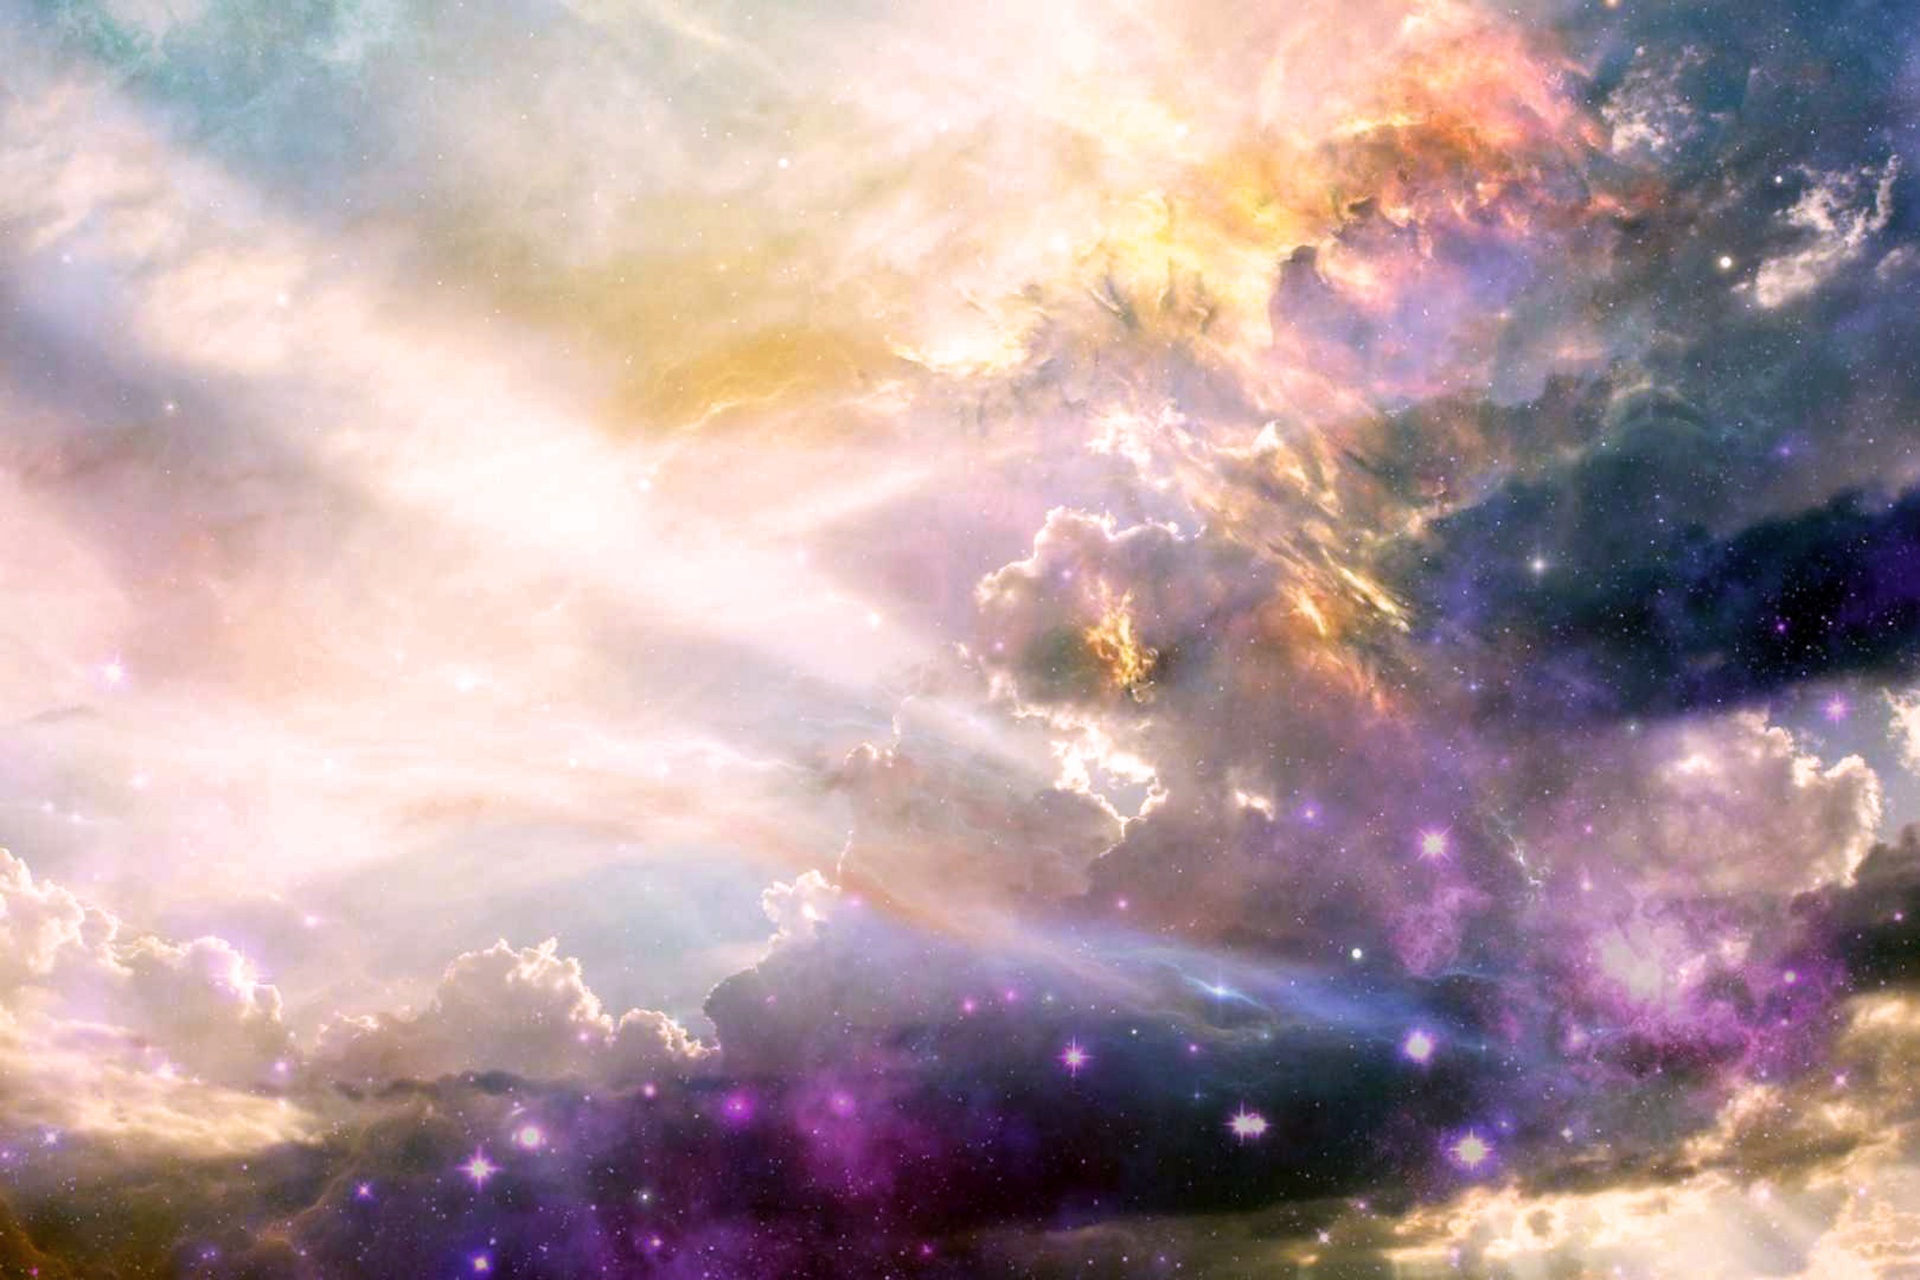 Mlha kosmos hvězd vesmír